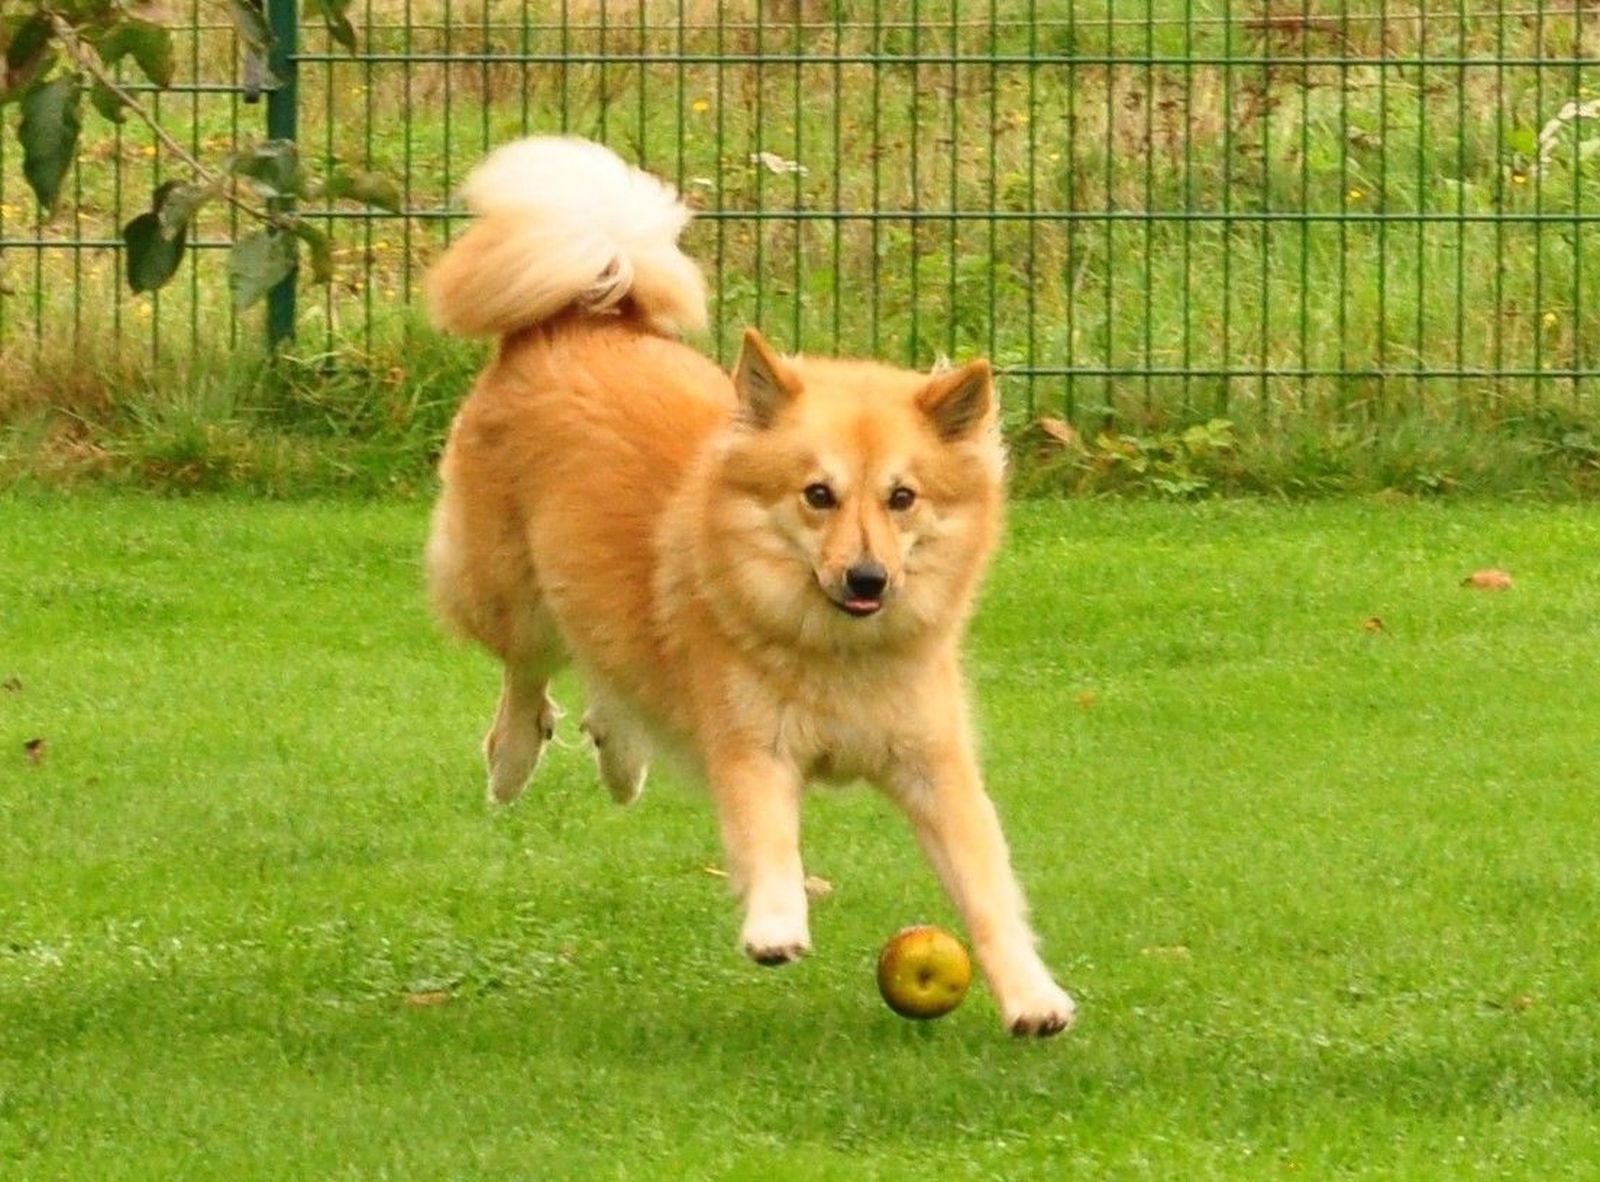 Ein rotbrauner Hund mit spitzähnlichem Aussehen spielt auf einer eingezäunten Wiese mit einem Apfel und schaut in Richtung Betrachter